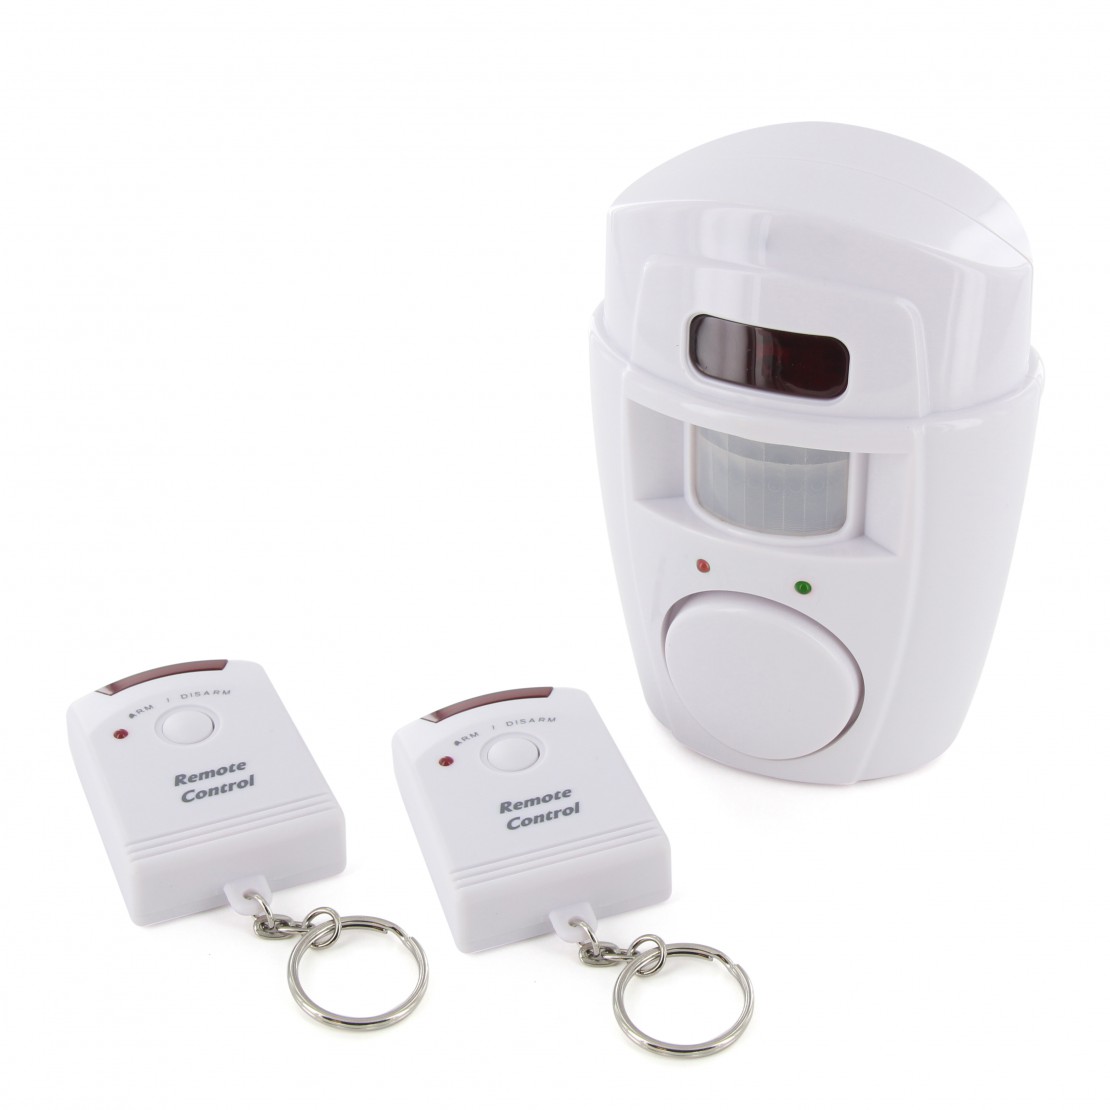 ✓ Detector de movimientos - Sensores de movimiento de alarmas